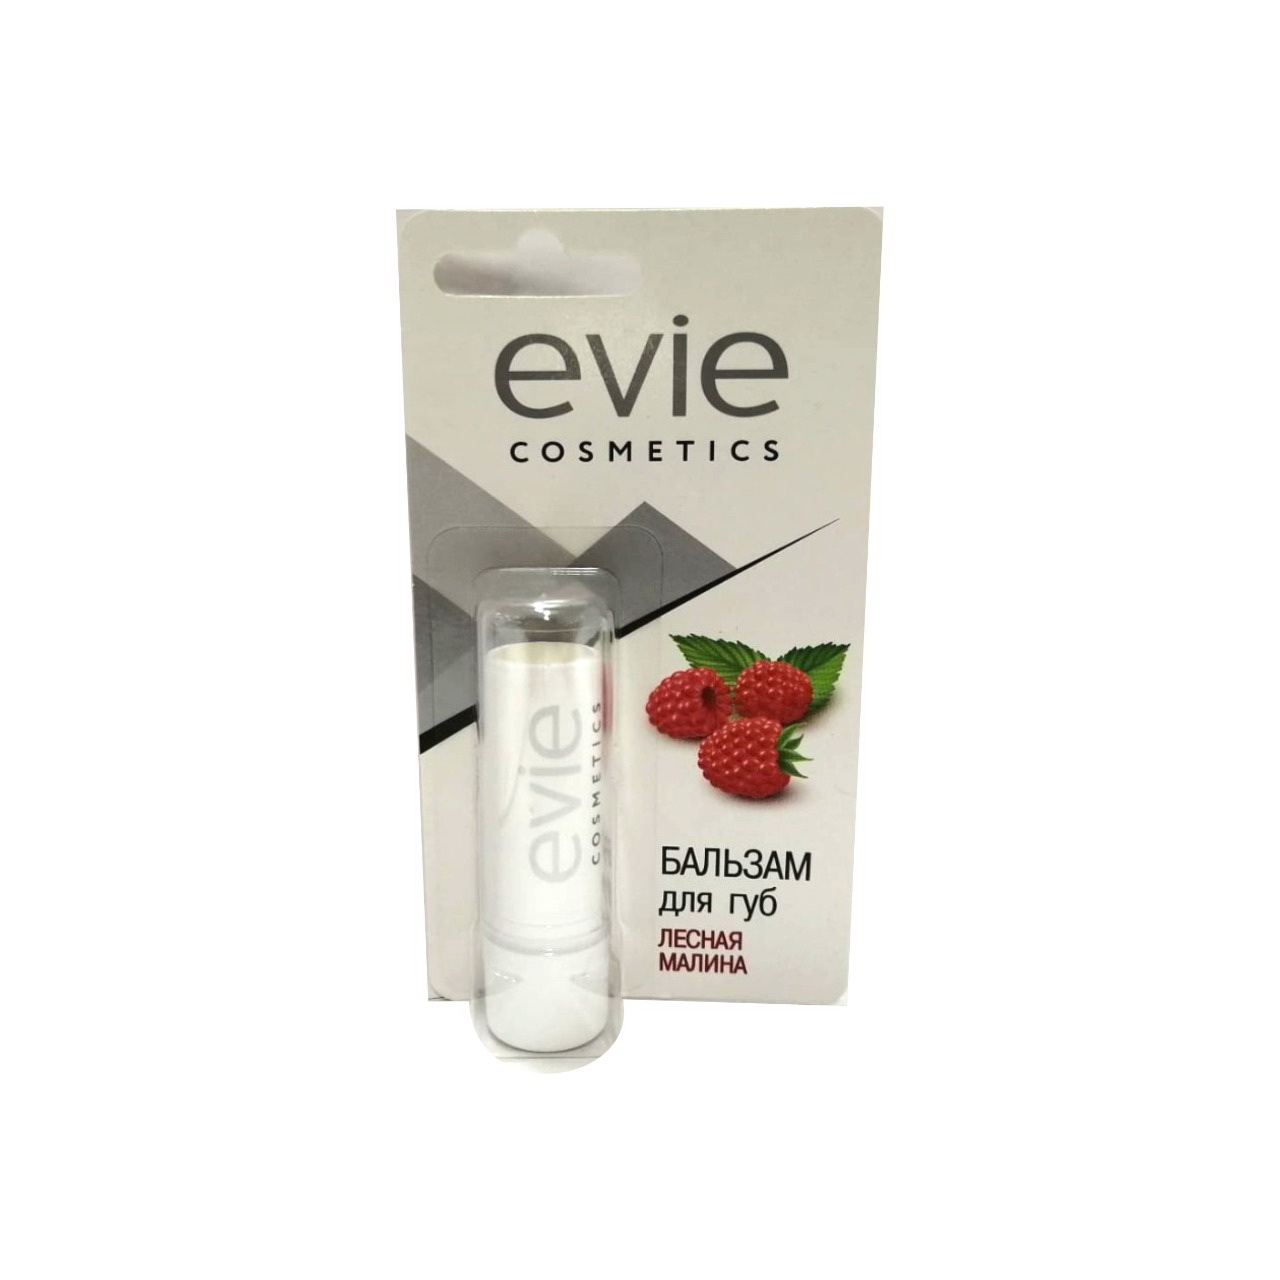 Evie cosmetics бальзам для губ лесная малина 3,7г